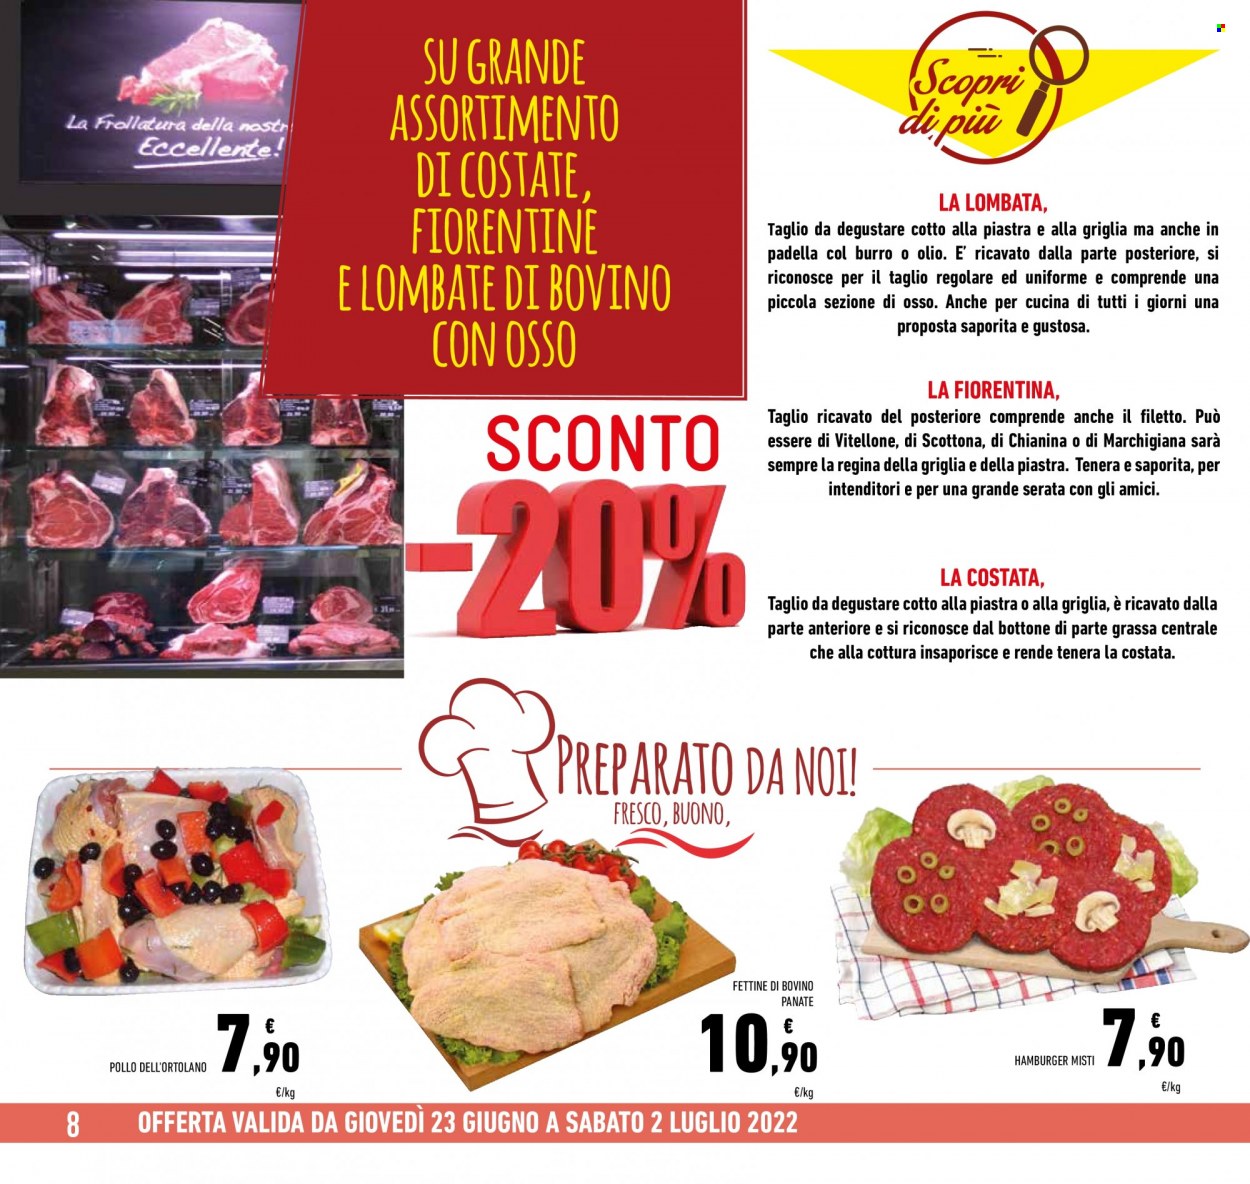 thumbnail - Volantino Conad - 23/6/2022 - 2/7/2022 - Prodotti in offerta - pollo, manzo, fettine di bovino, vitellone, scottona, hamburger, olio. Pagina 8.